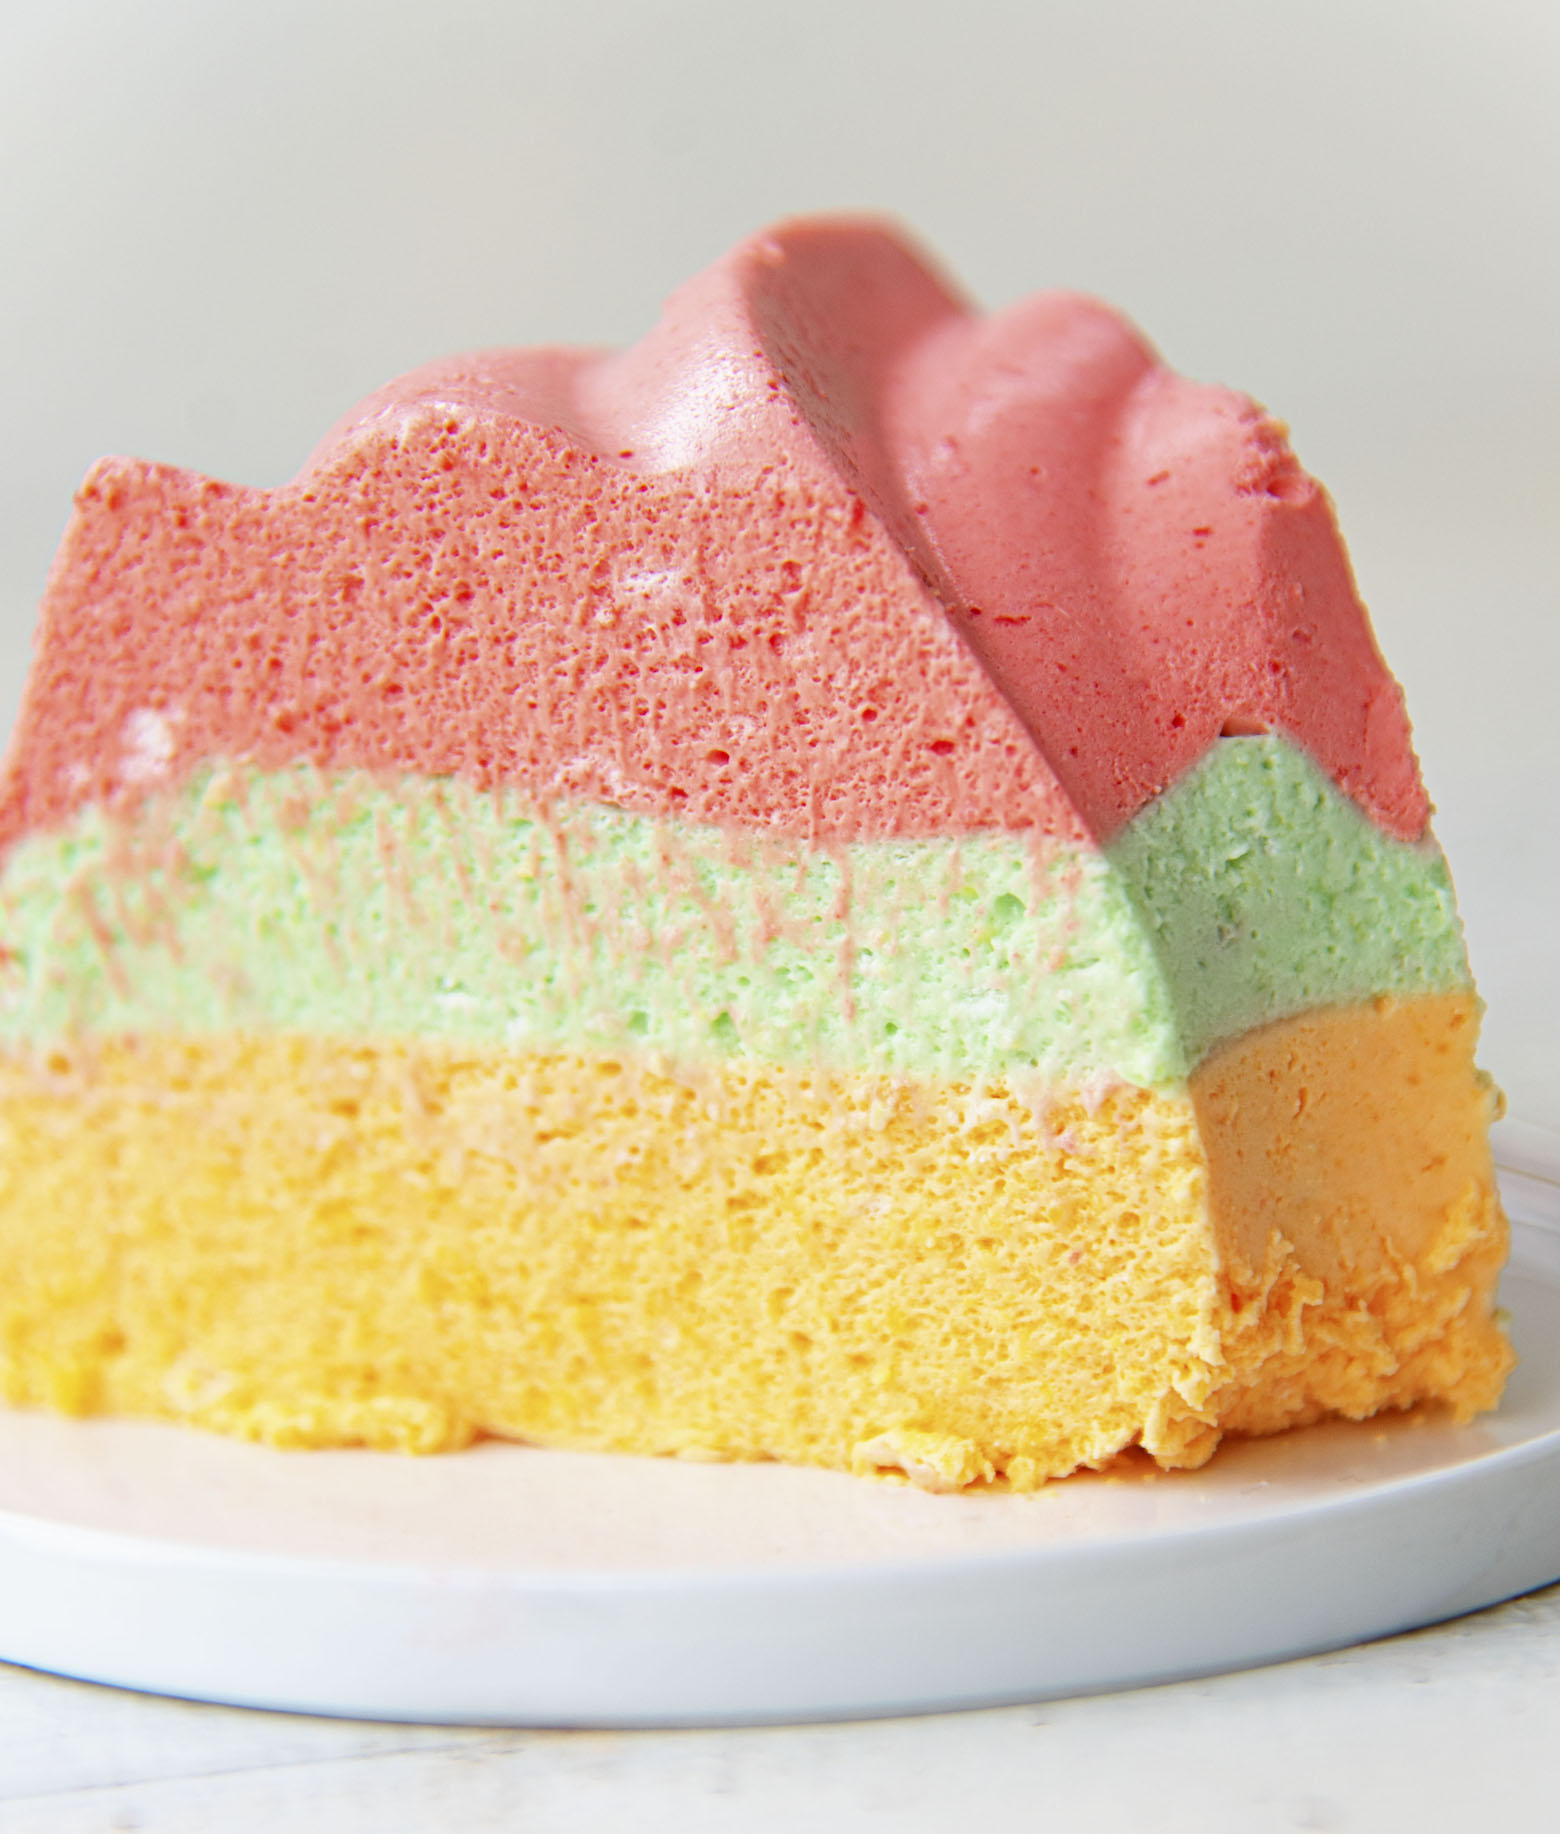 Rainbow Jello Mold + Birthday!